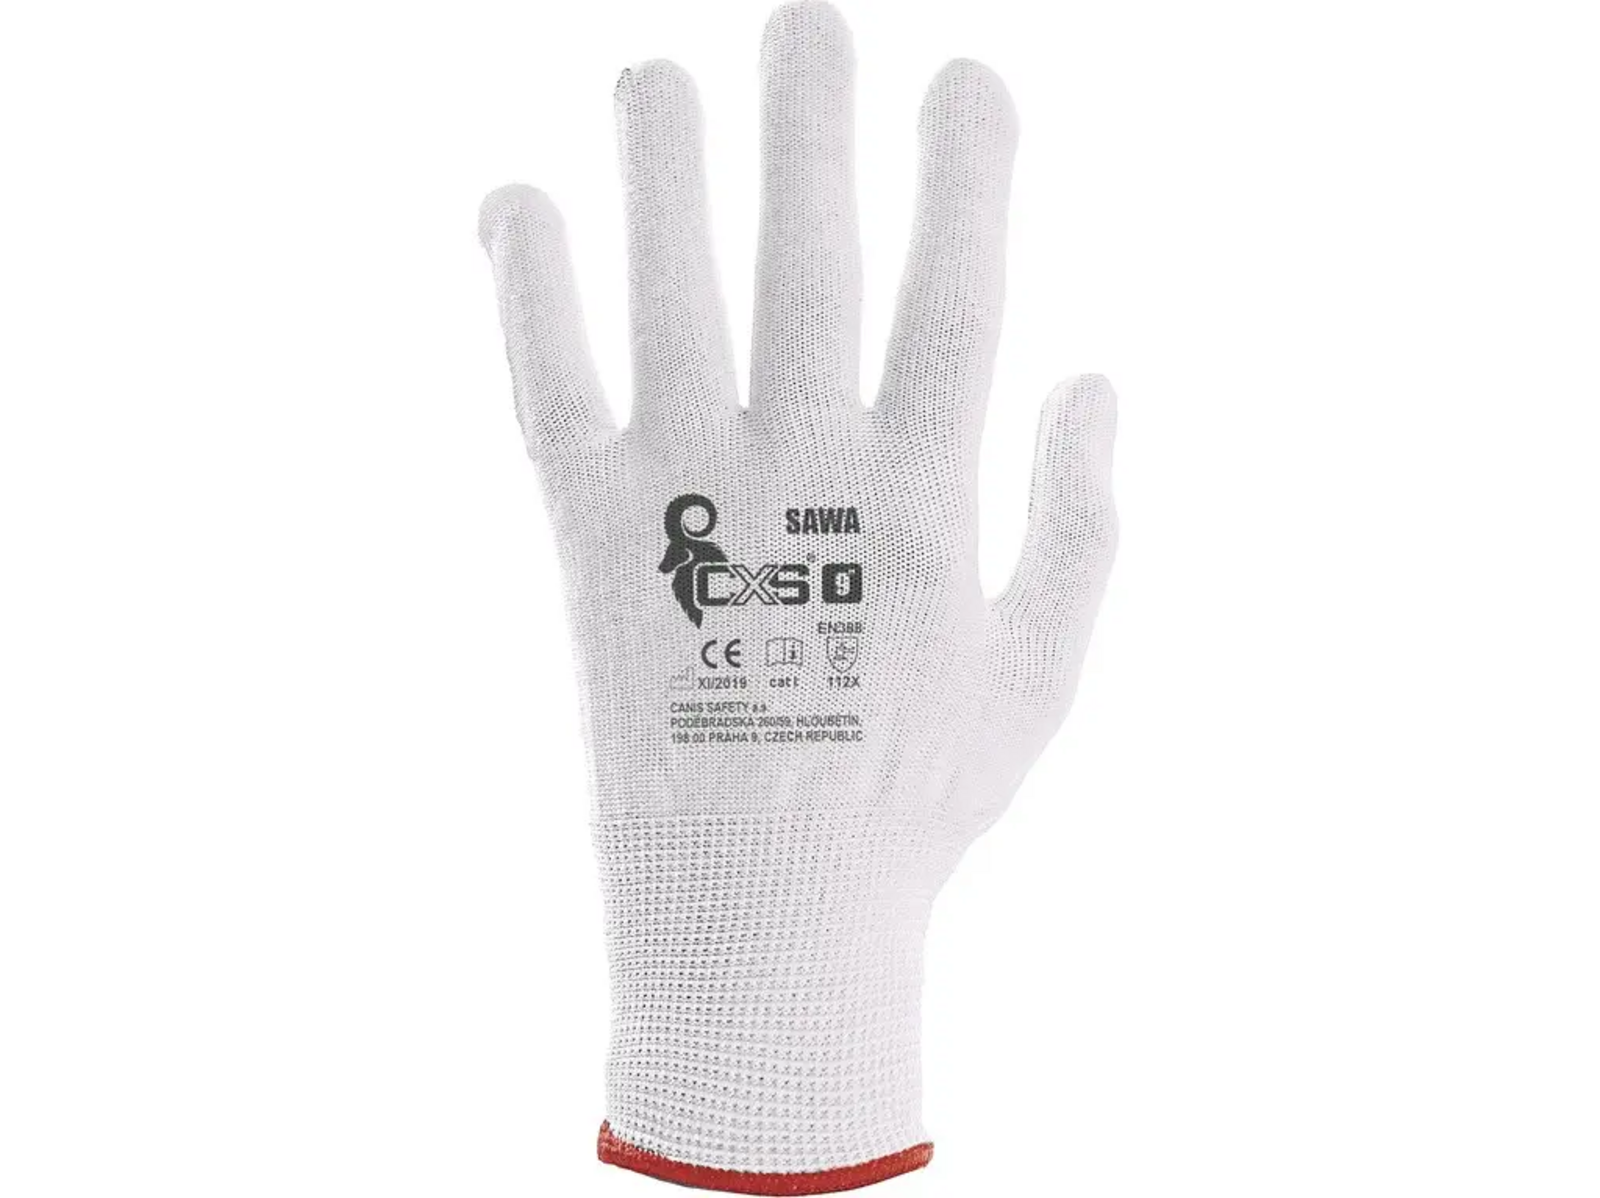 Textilné rukavice CXS Sawa - veľkosť: 8/M, farba: biela